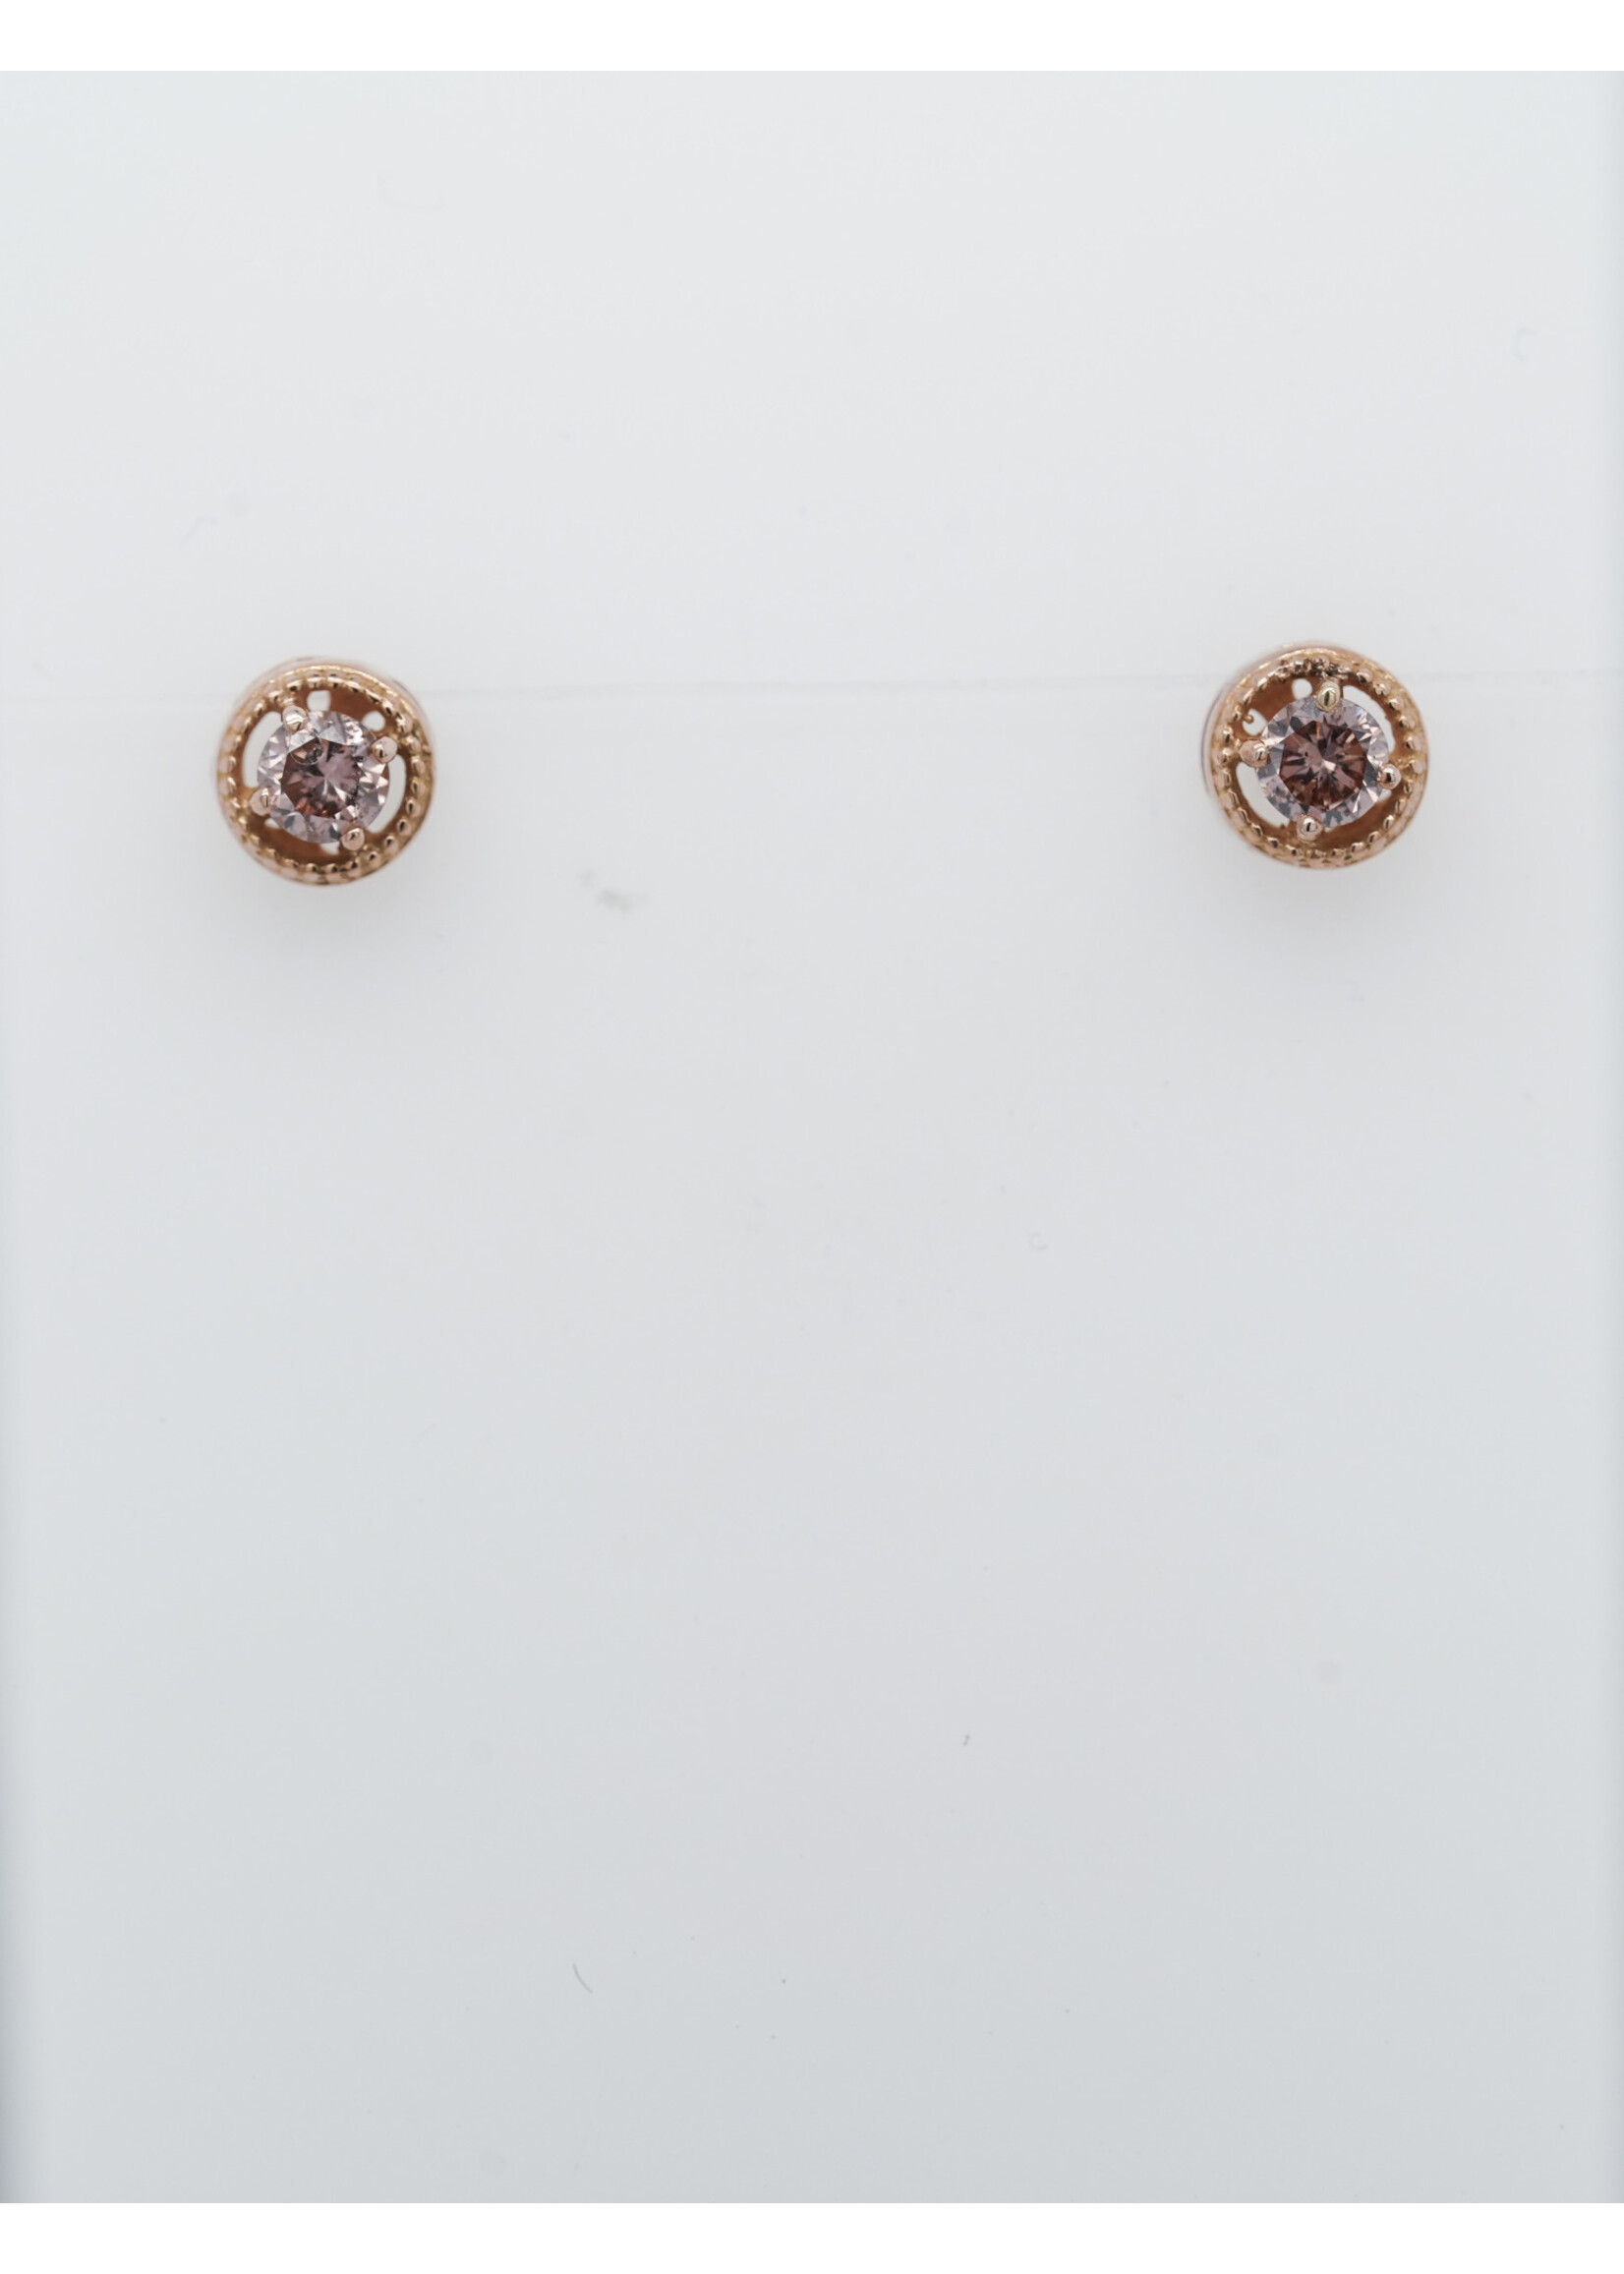 14KR 1.2g .34ctw Brown/Pink Diamond Stud Earrings